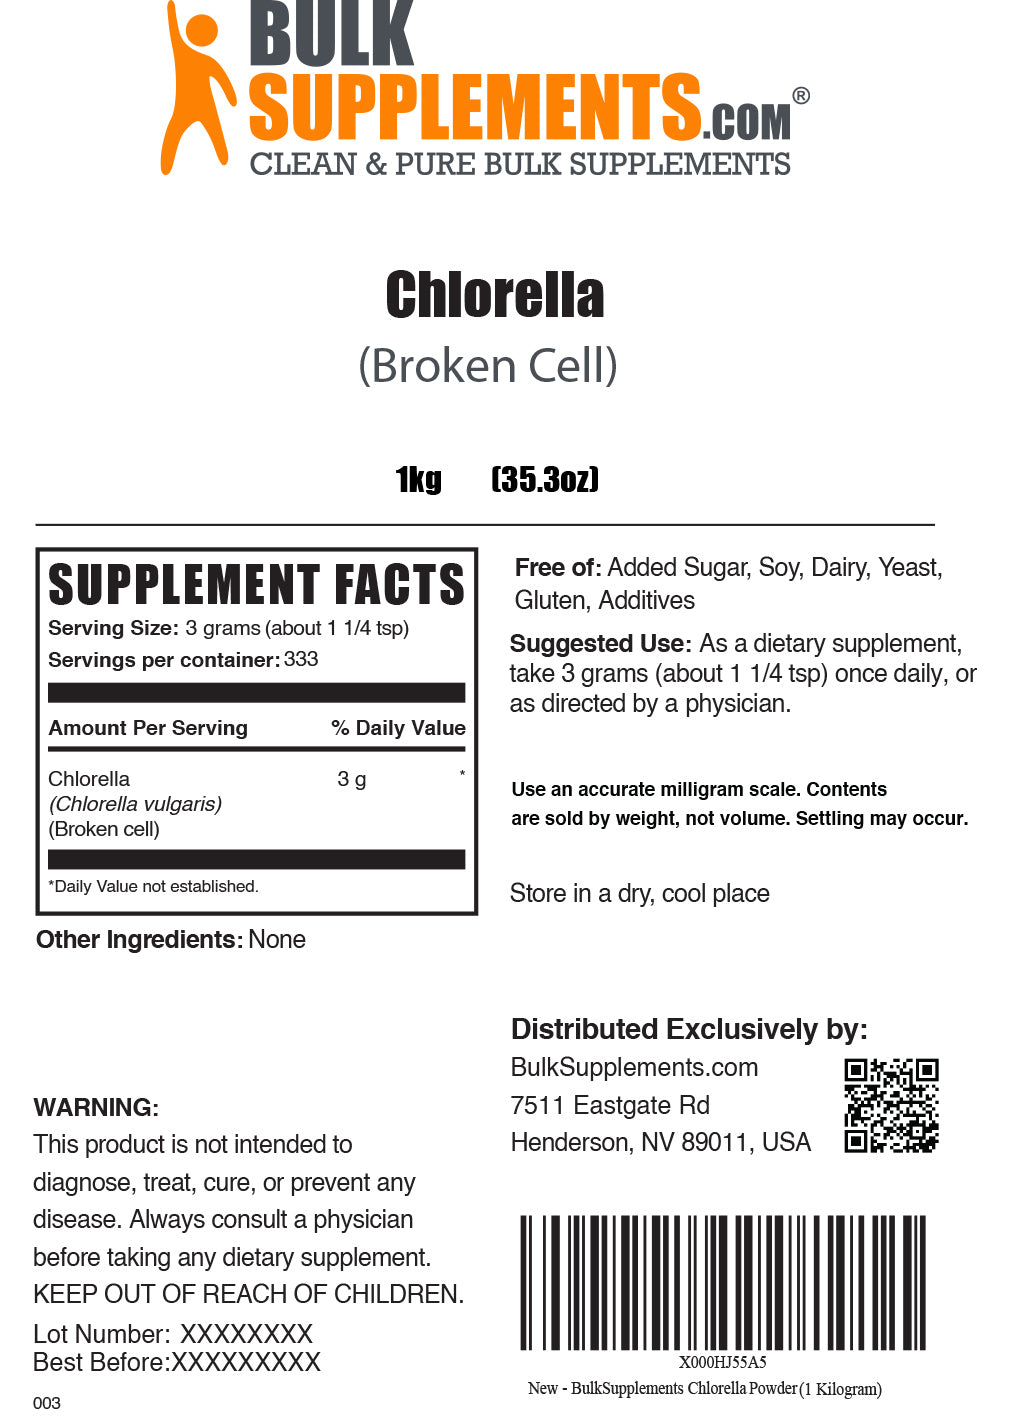 1kg of chlorella powder